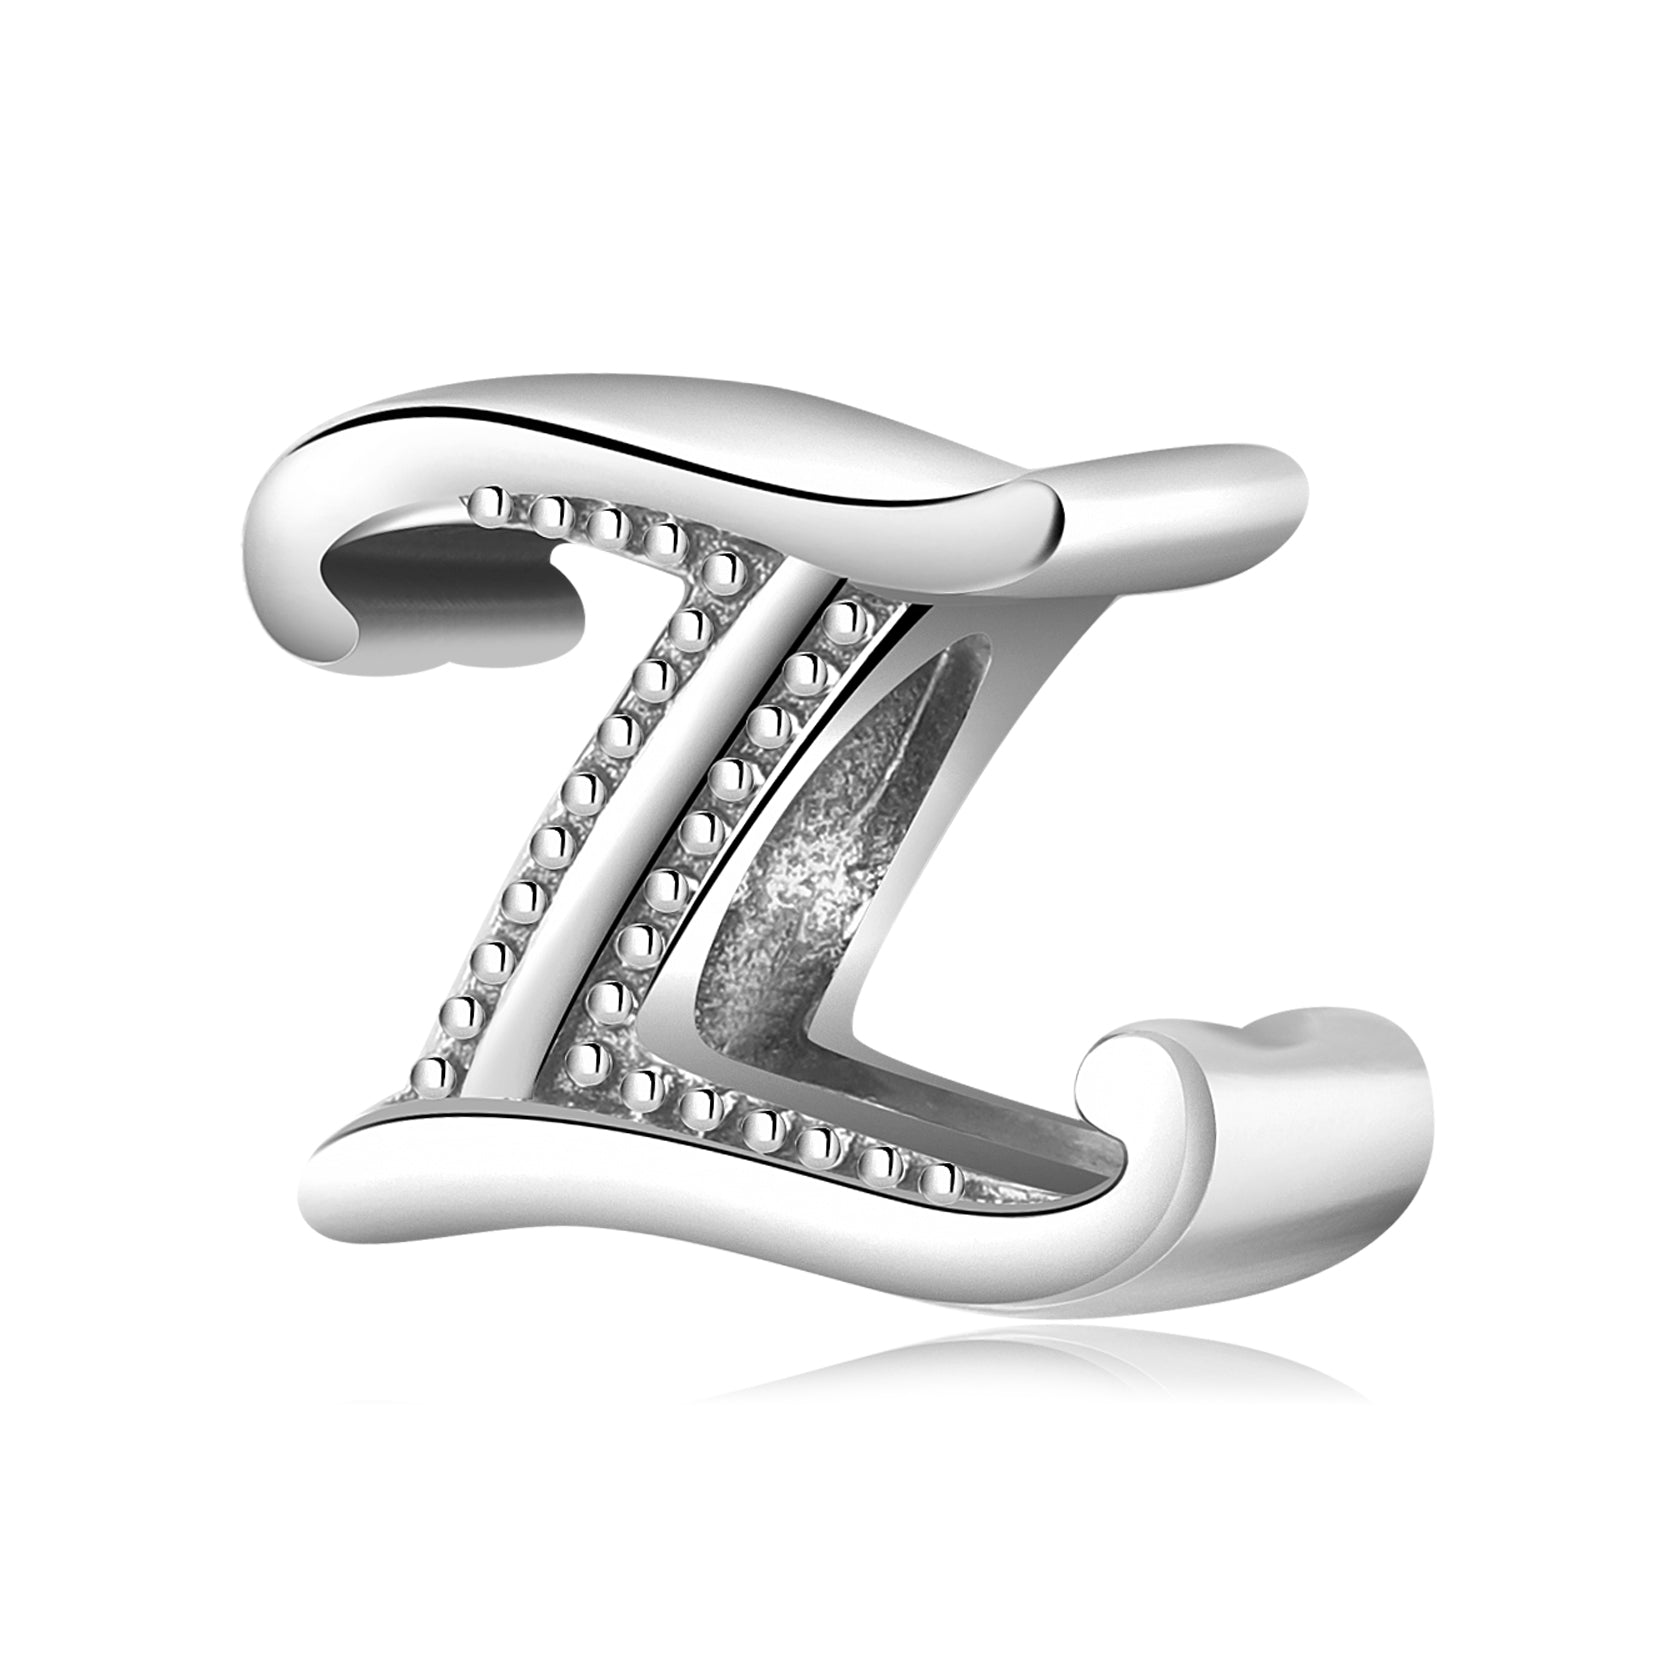 Letter "Z" - pendant for names